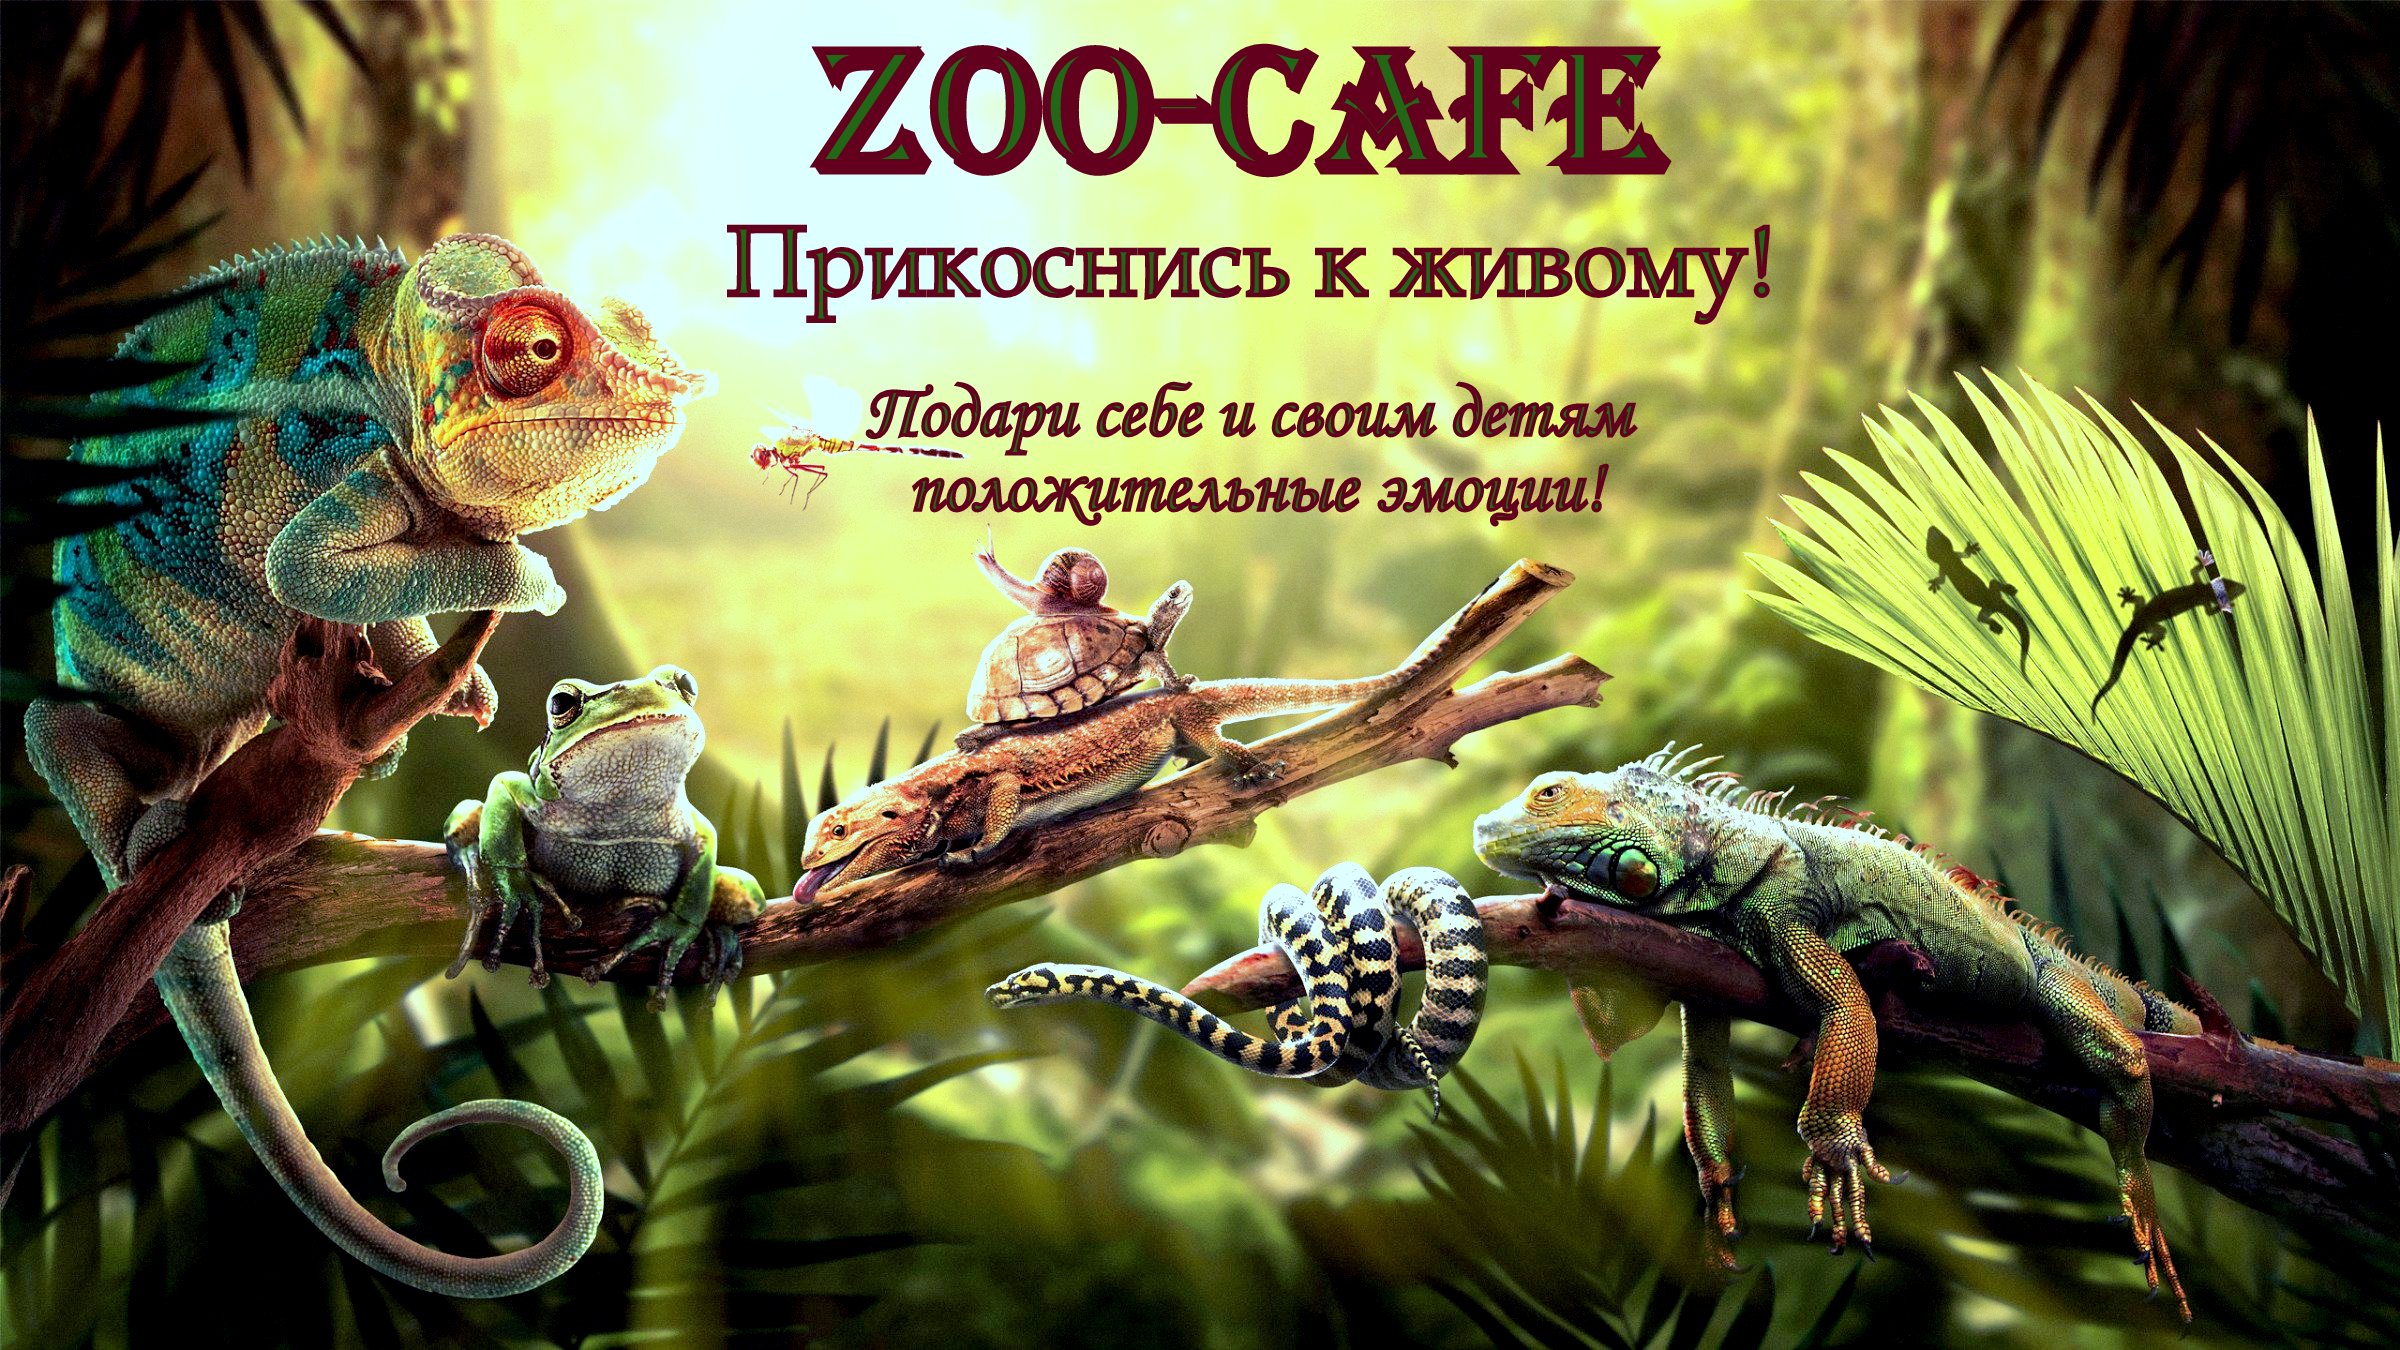 Контактный мини-зоопарк "ZOO-CAFE"